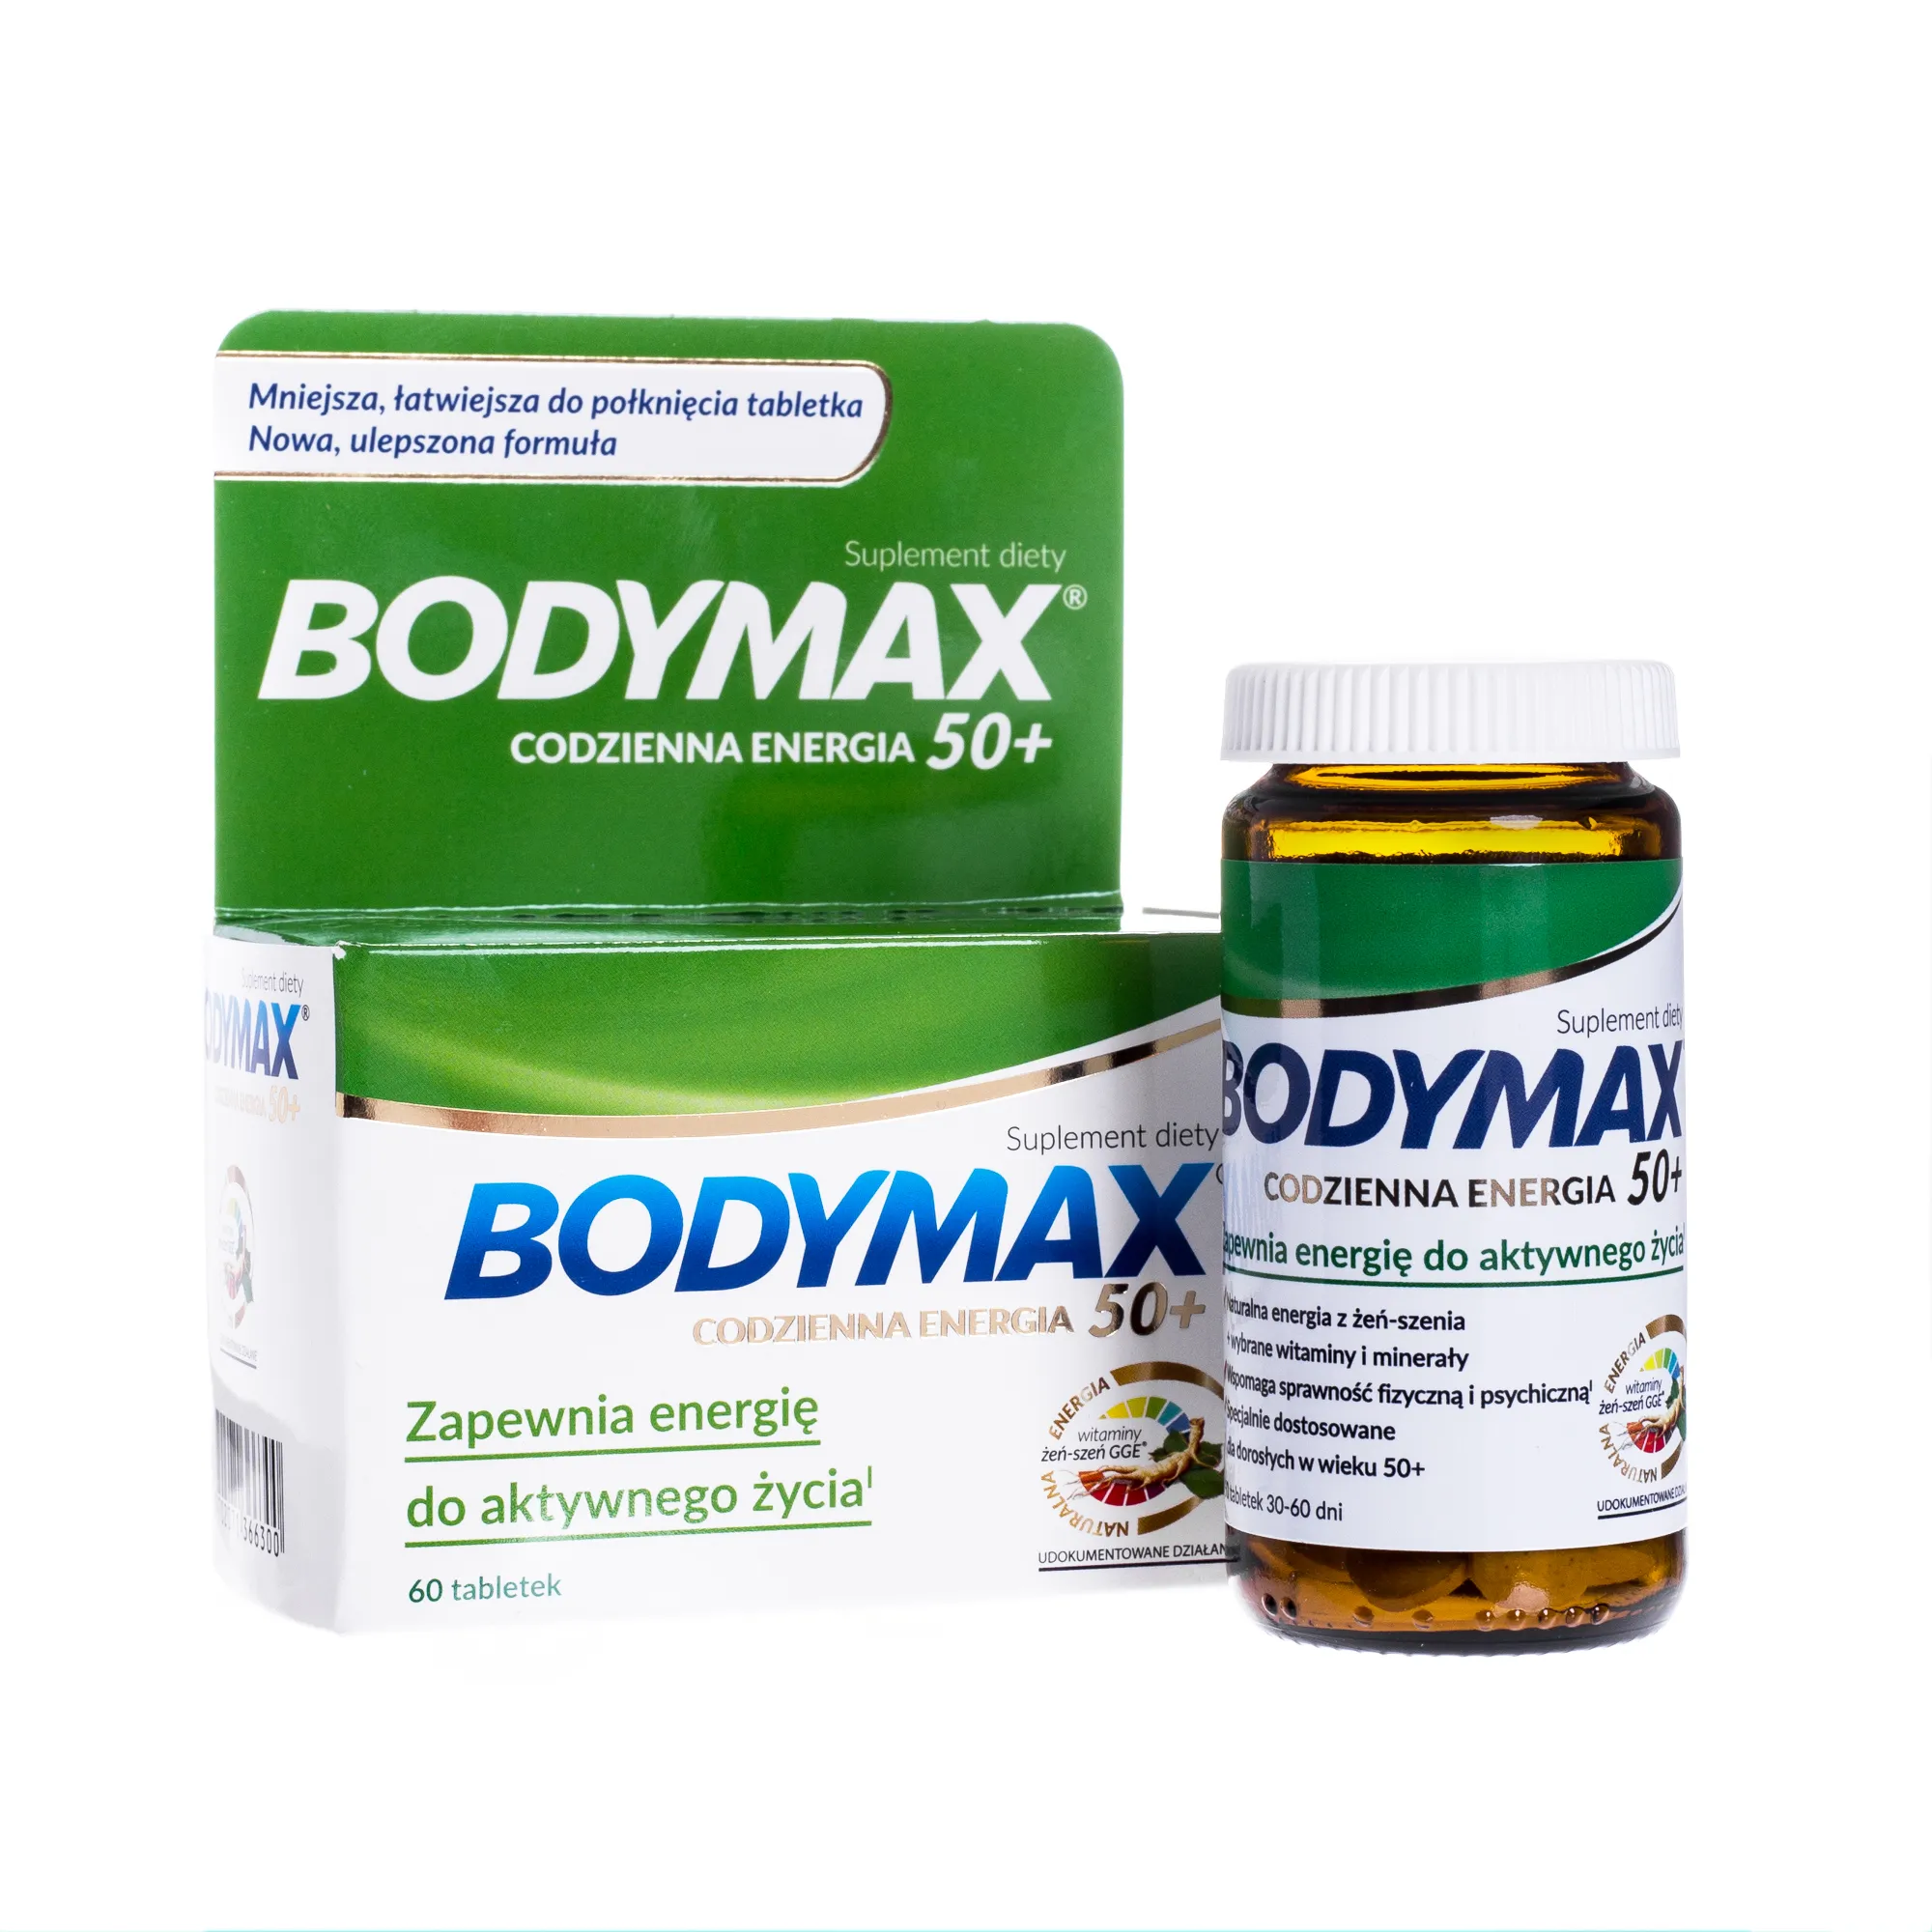 Bodymax 50+, suplement diety, 60 tabletek